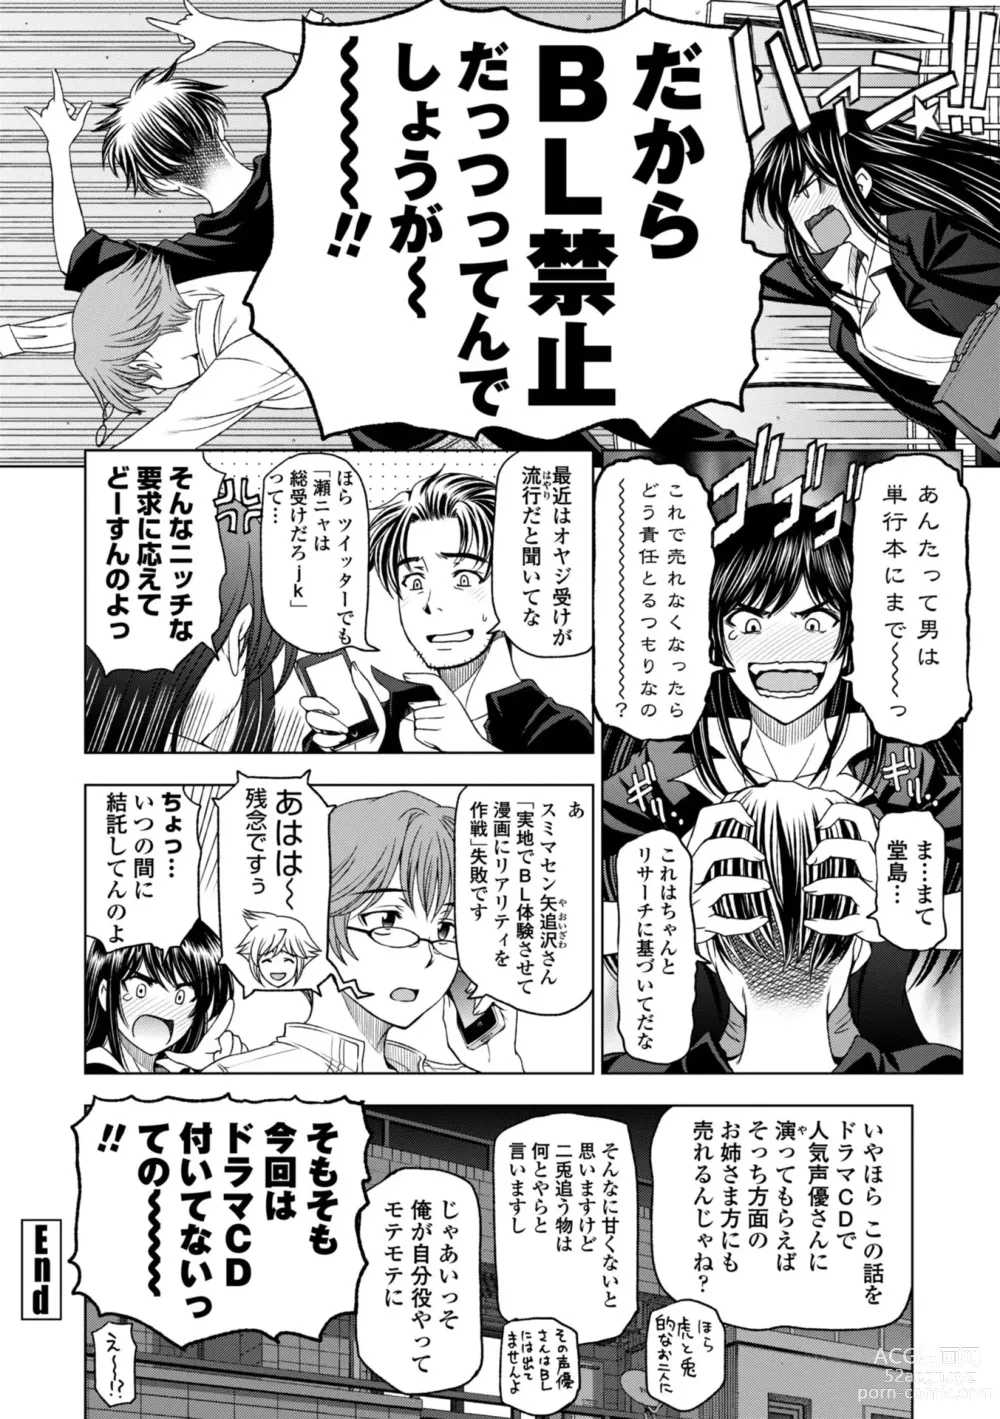 Page 242 of manga Ane wa Shota o Suki ni Naru